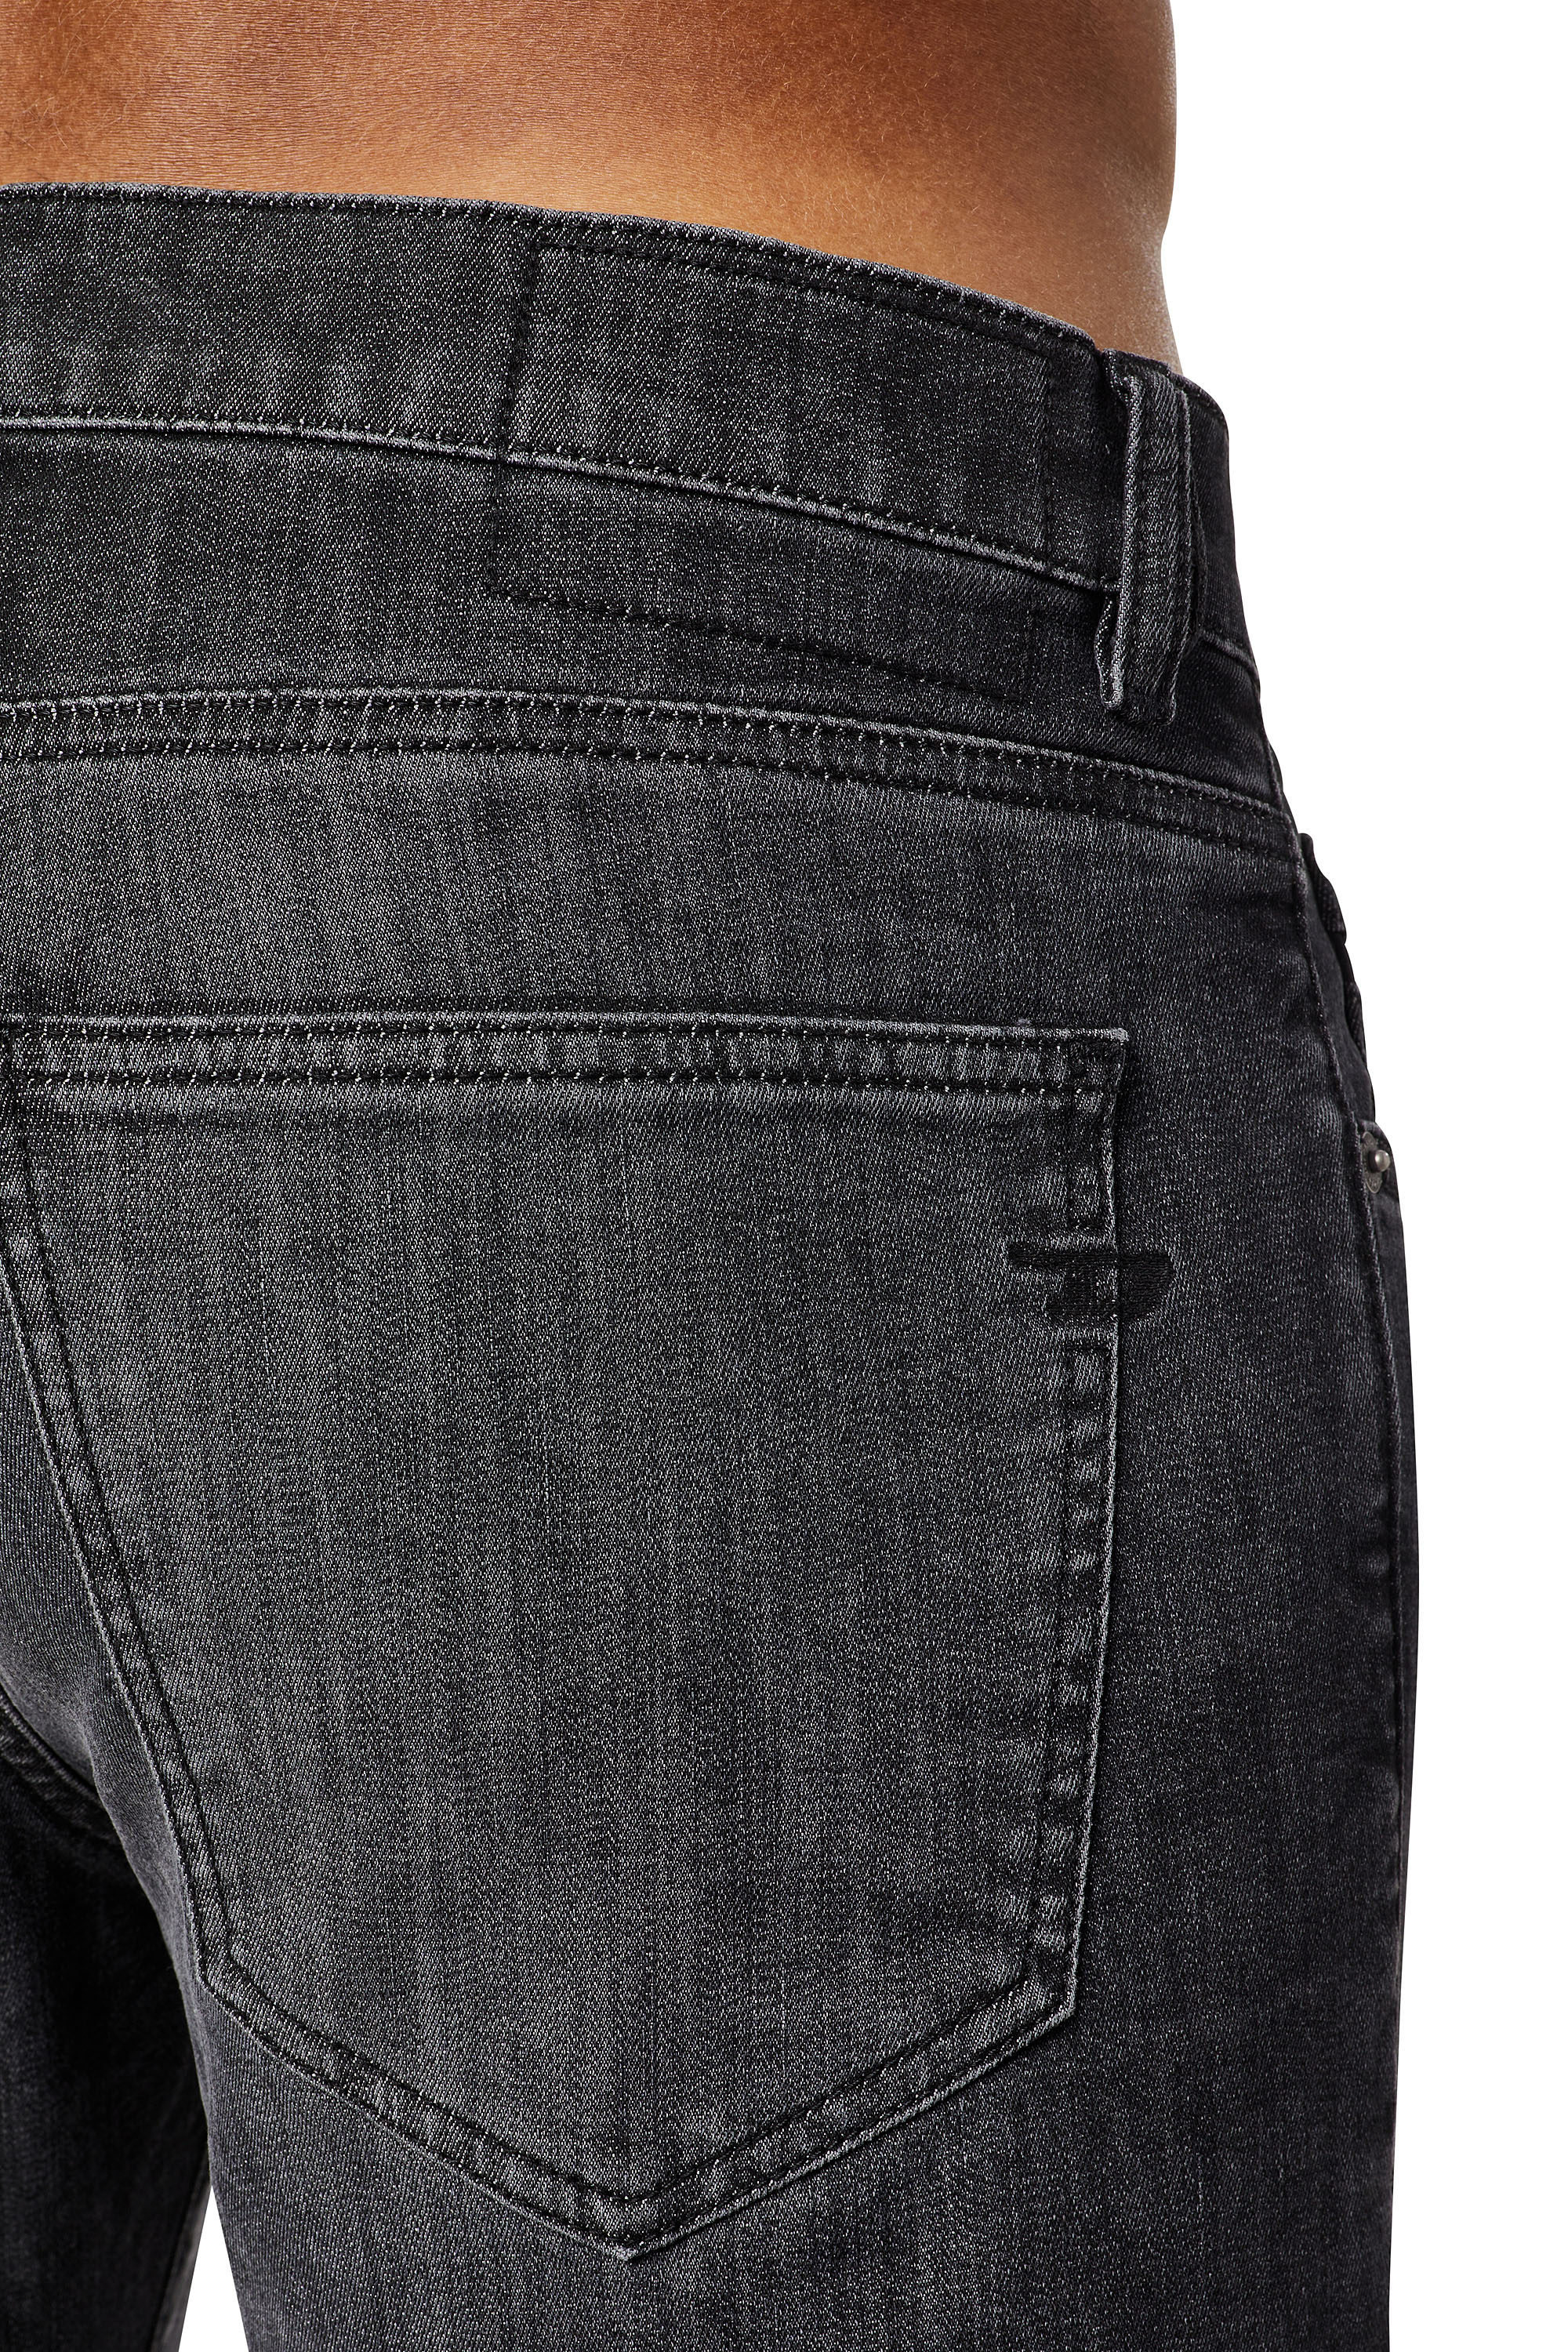 Diesel - D-Strukt JoggJeans® 09D08 Slim, Negro/Gris oscuro - Image 3